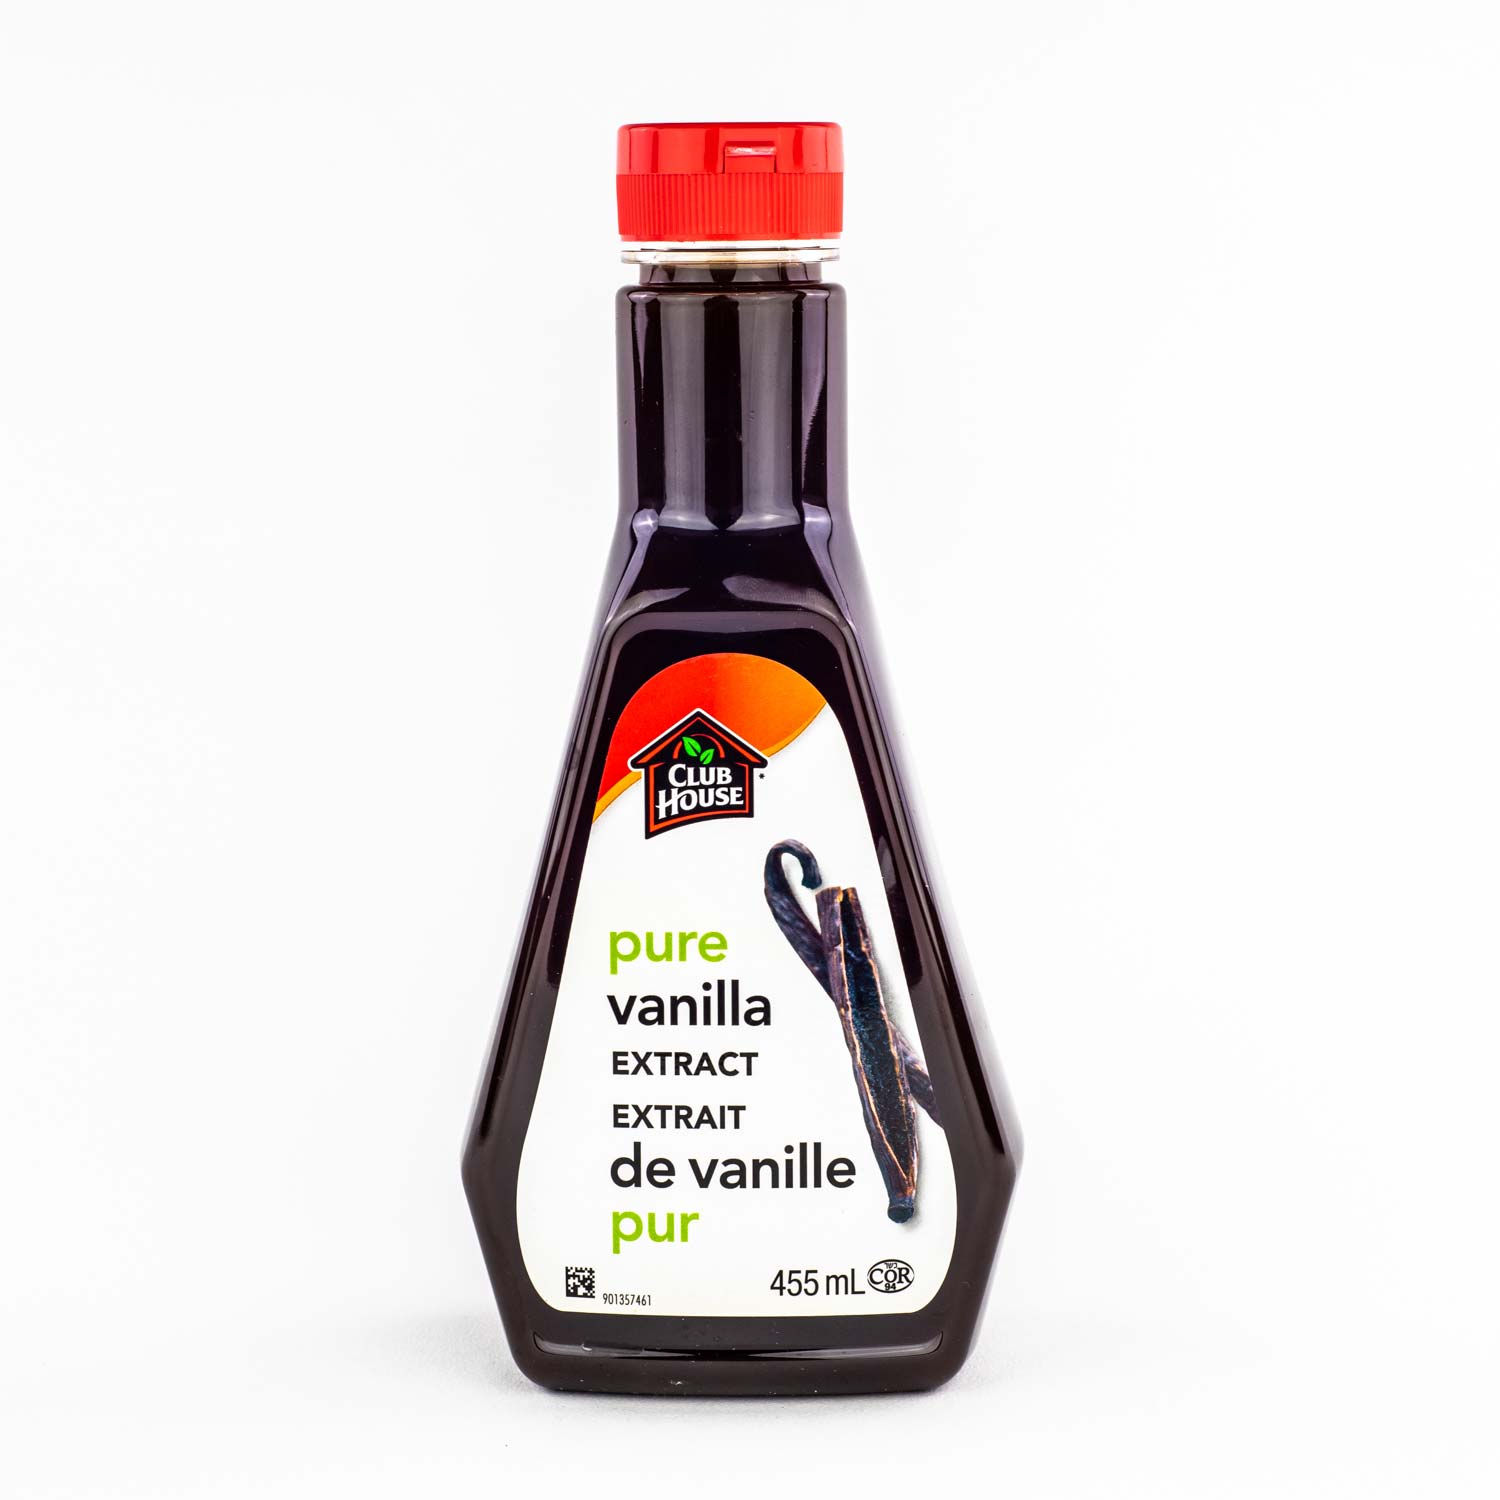 Extrait de vanille pur 455 ml - Arôme et colorant